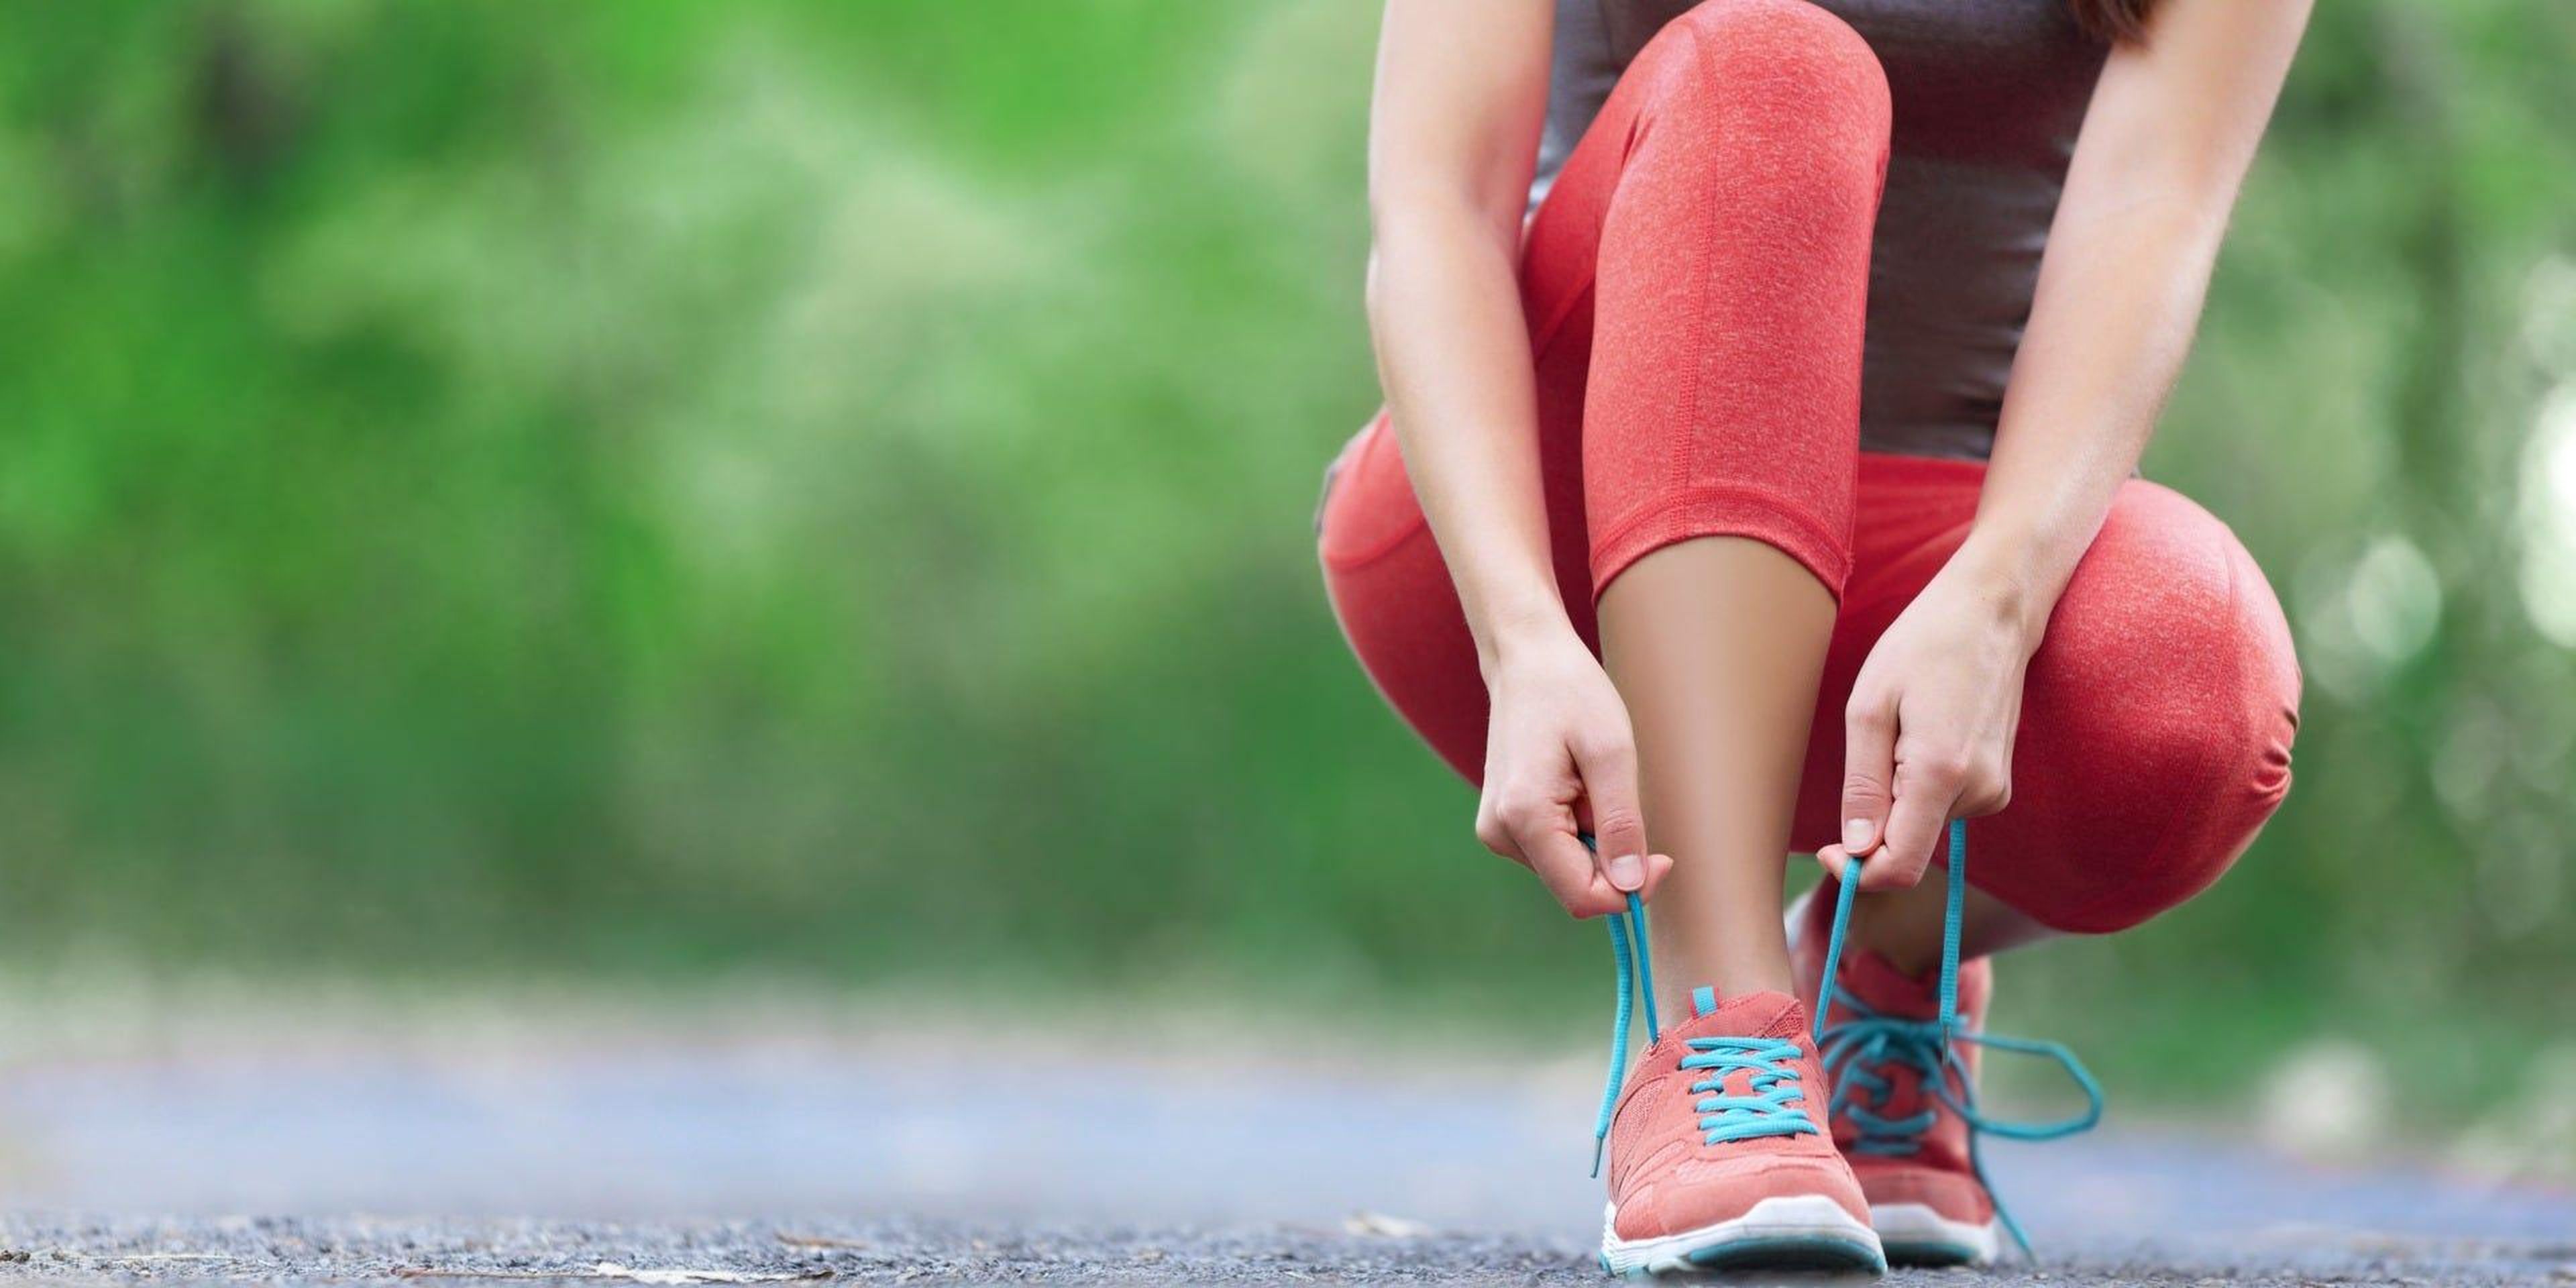 Incluso una caminata rápida puede ayudar a bajar el colesterol, sin medicación.